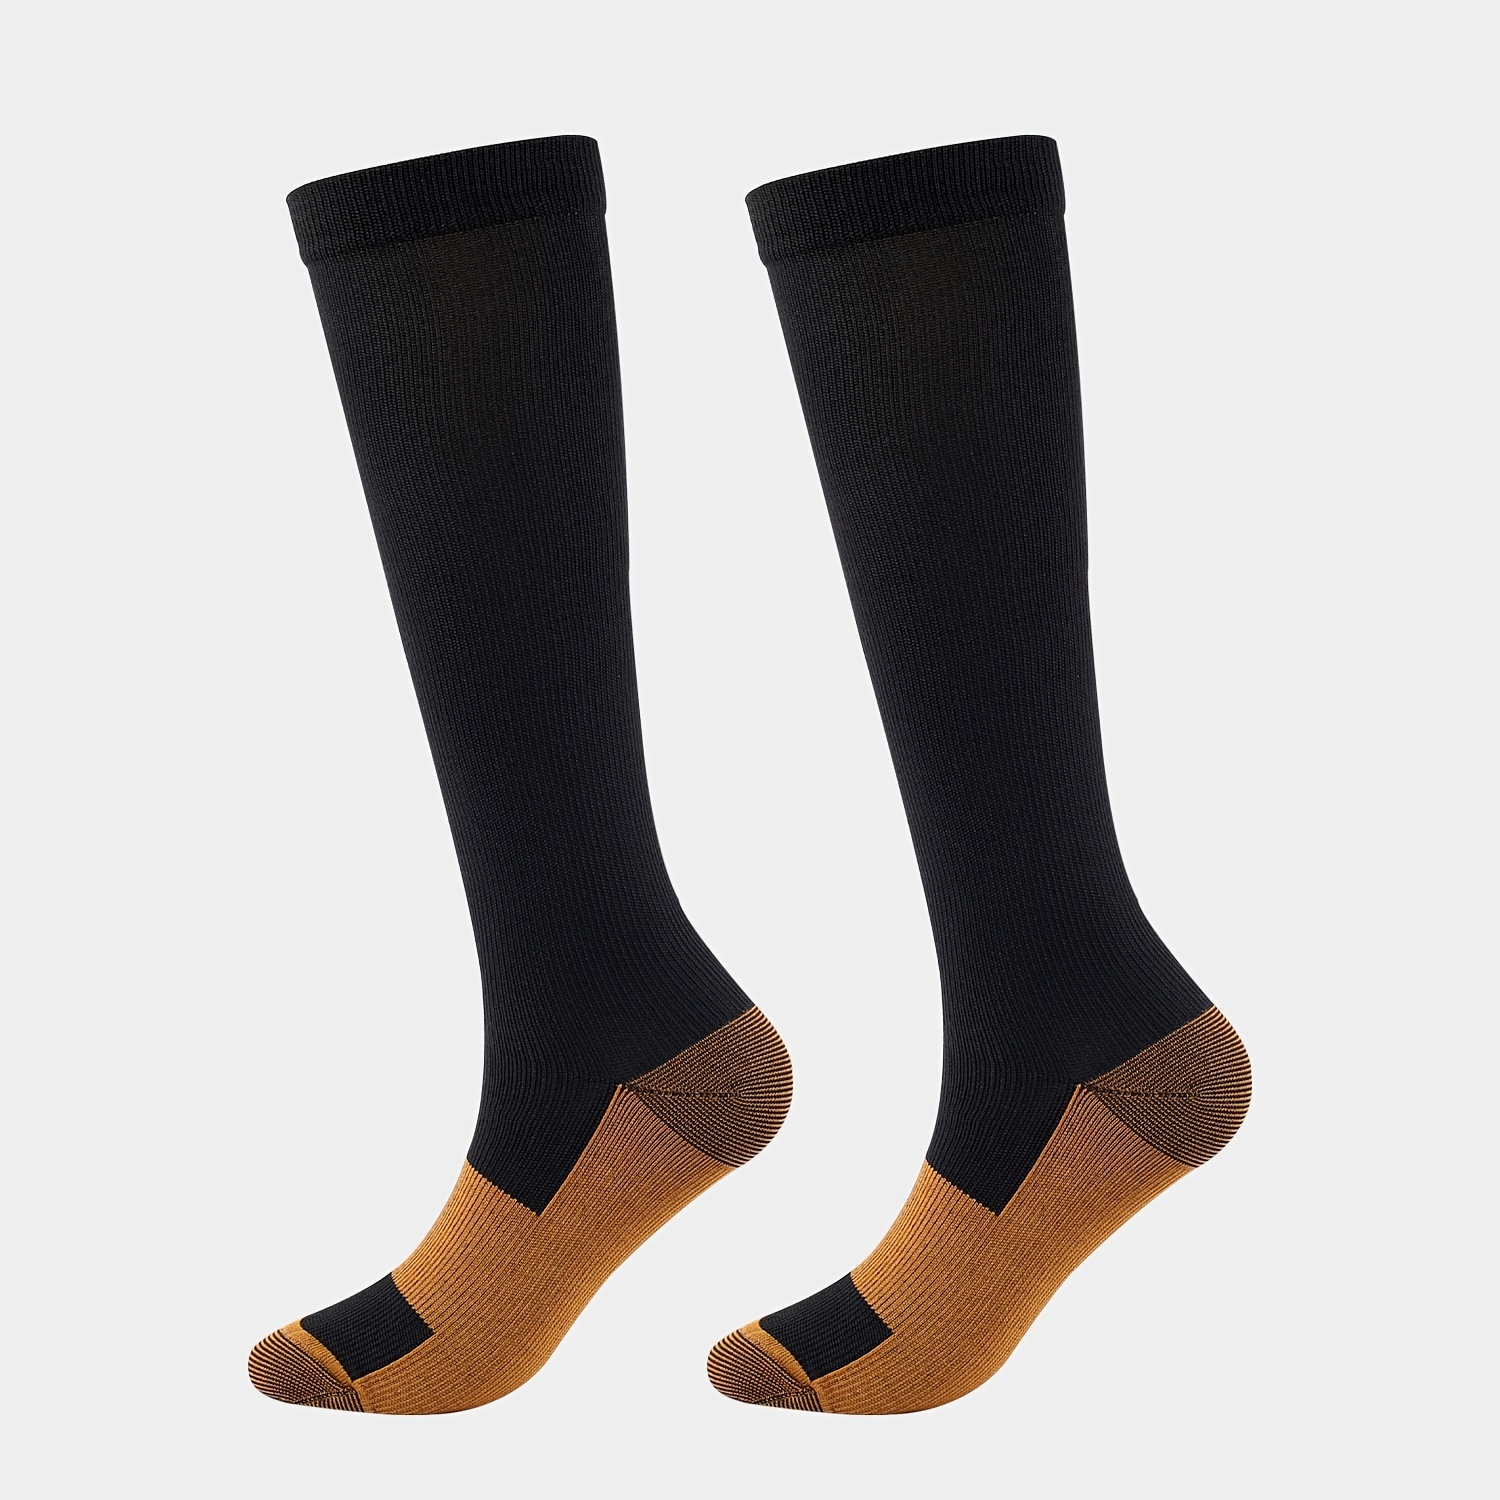 5 pares de calcetines de compresión para hombre, bloque de color,  resistentes al sudor, anti olor, suaves y cómodos, sobre la pantorrilla